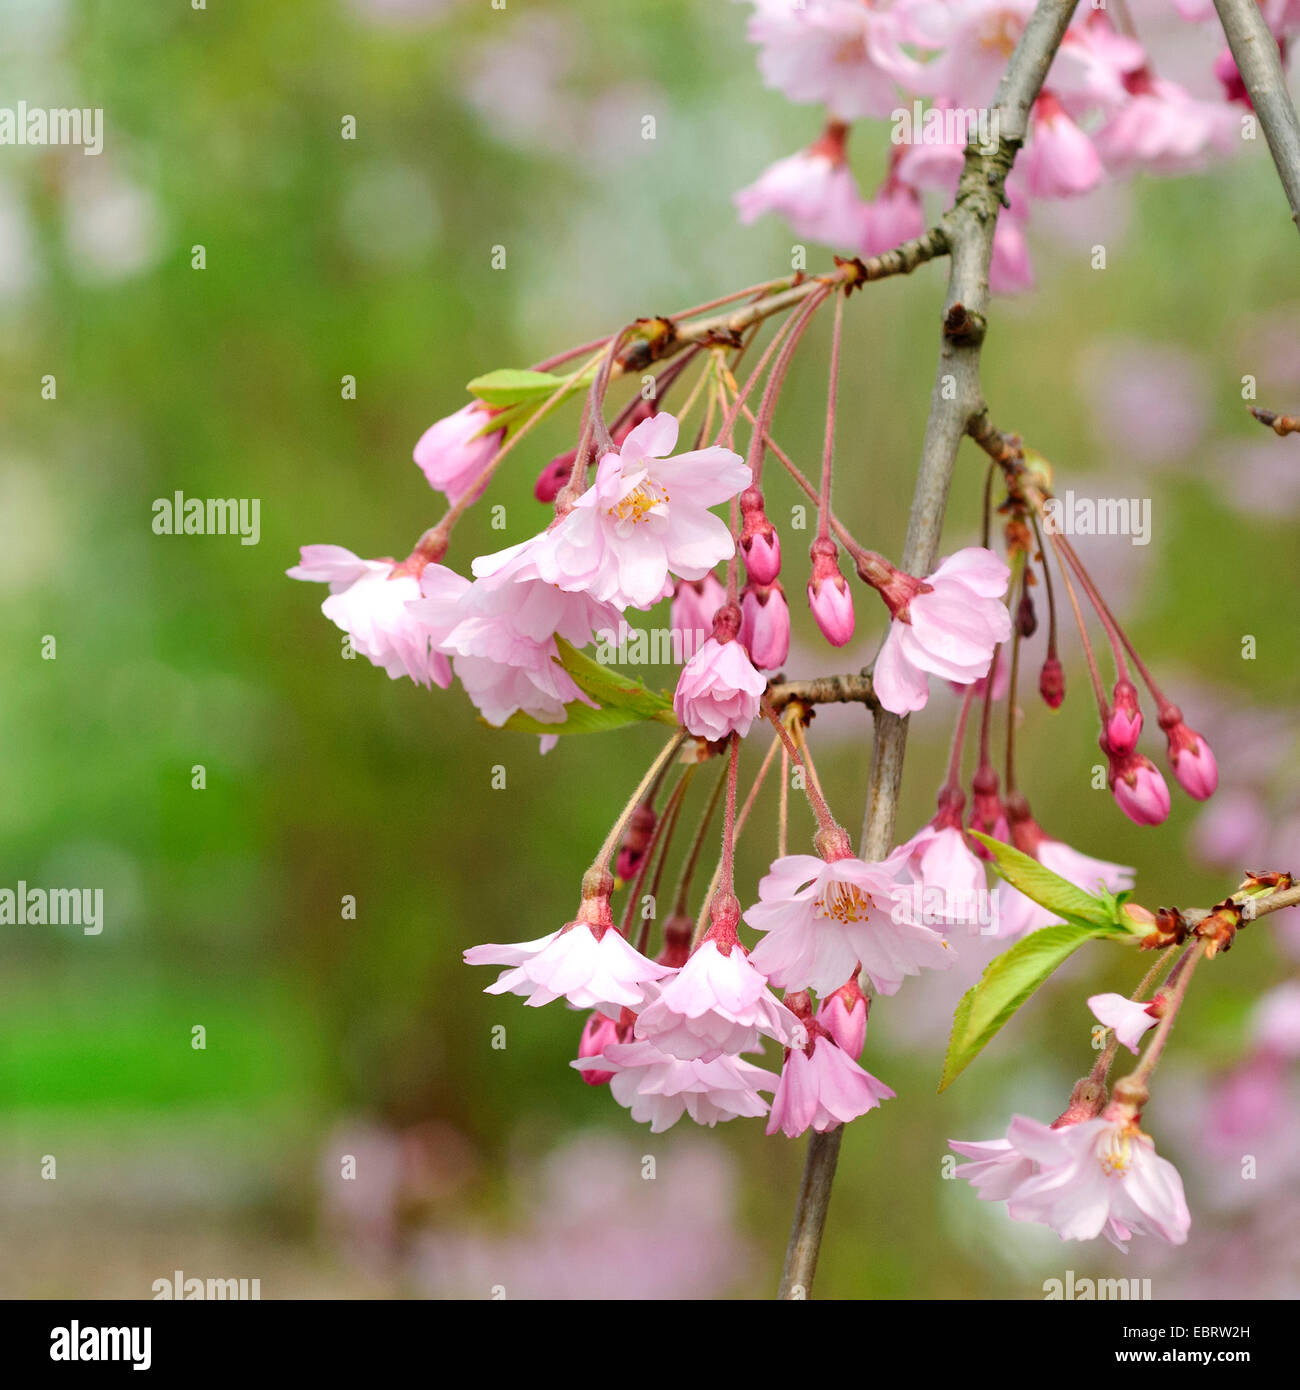 Autumn Cherry, Winter Flowering Cherry (Prunus subhirtella 'Pendula', Prunus subhirtella Pendula, Prunus pendula), blooming branch Stock Photo